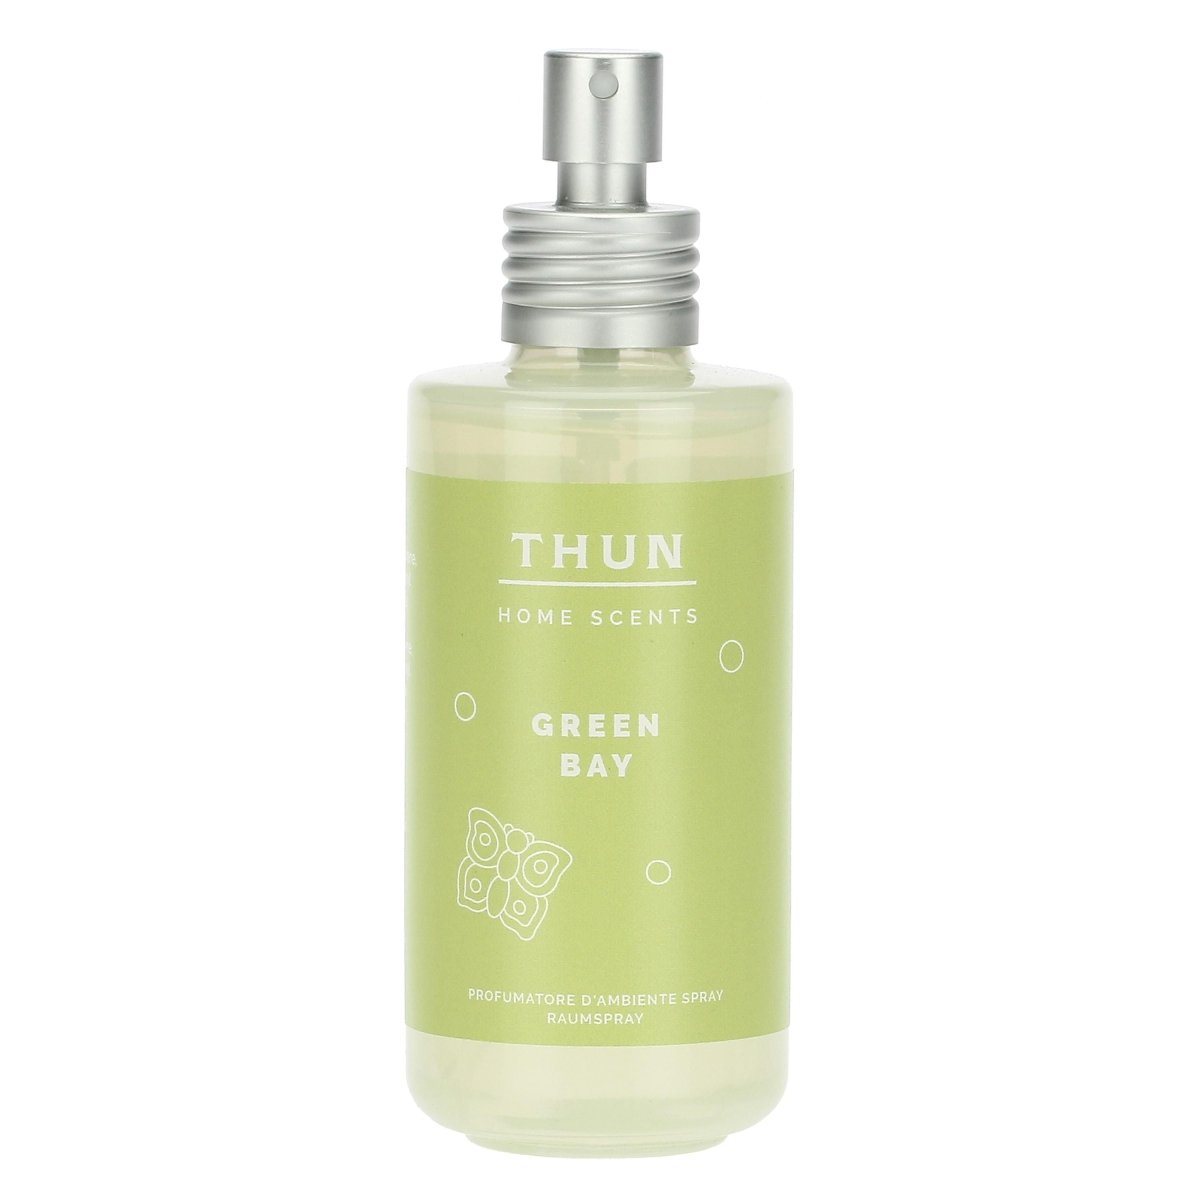 Thun - spray per ambiente gree bay| rohome - Rohome